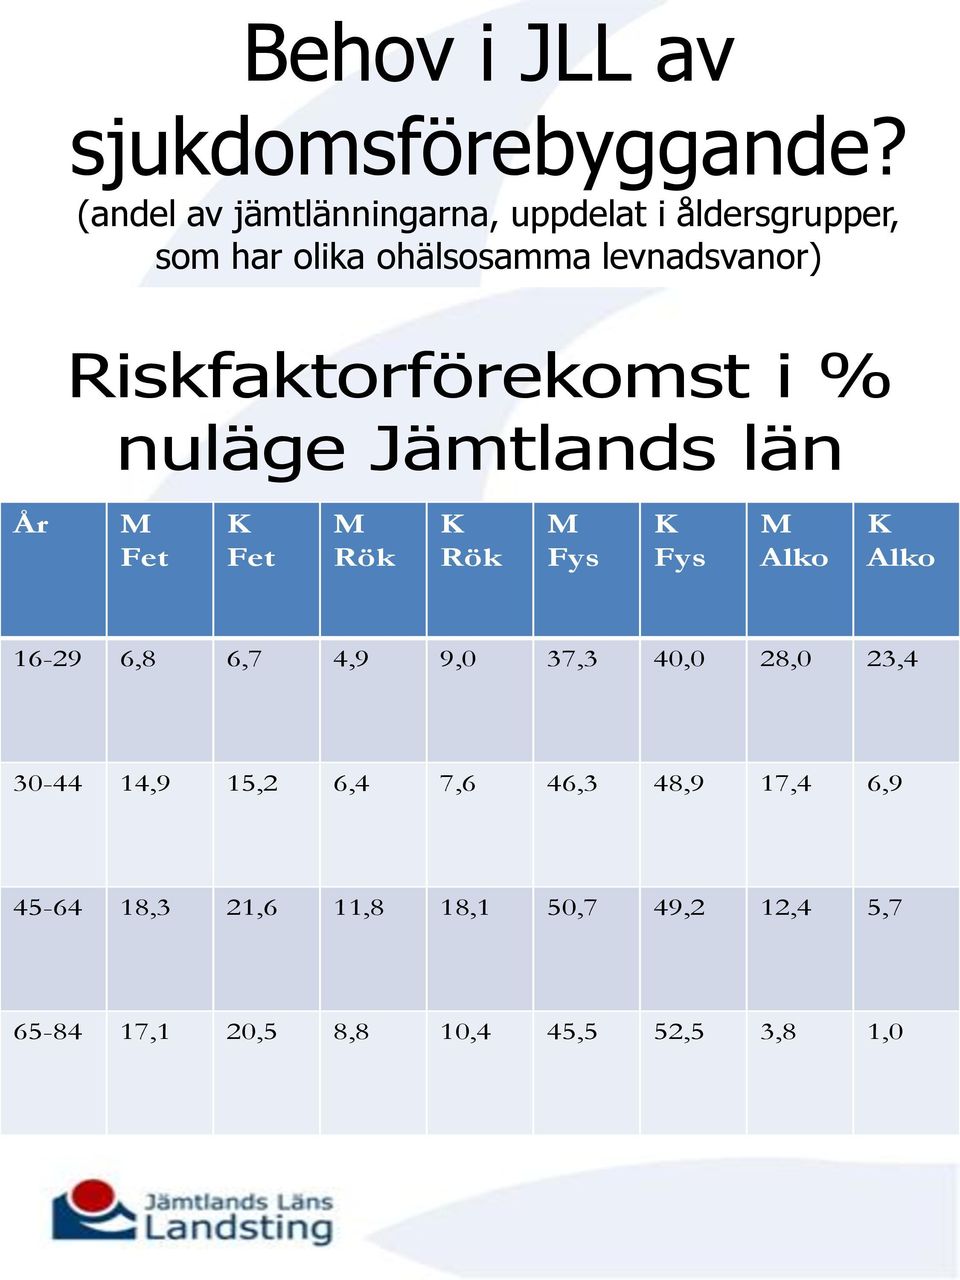 Riskfaktorförekomst i % nuläge Jämtlands län År M Fet K Fet M Rök K Rök M Fys K Fys M Alko K Alko